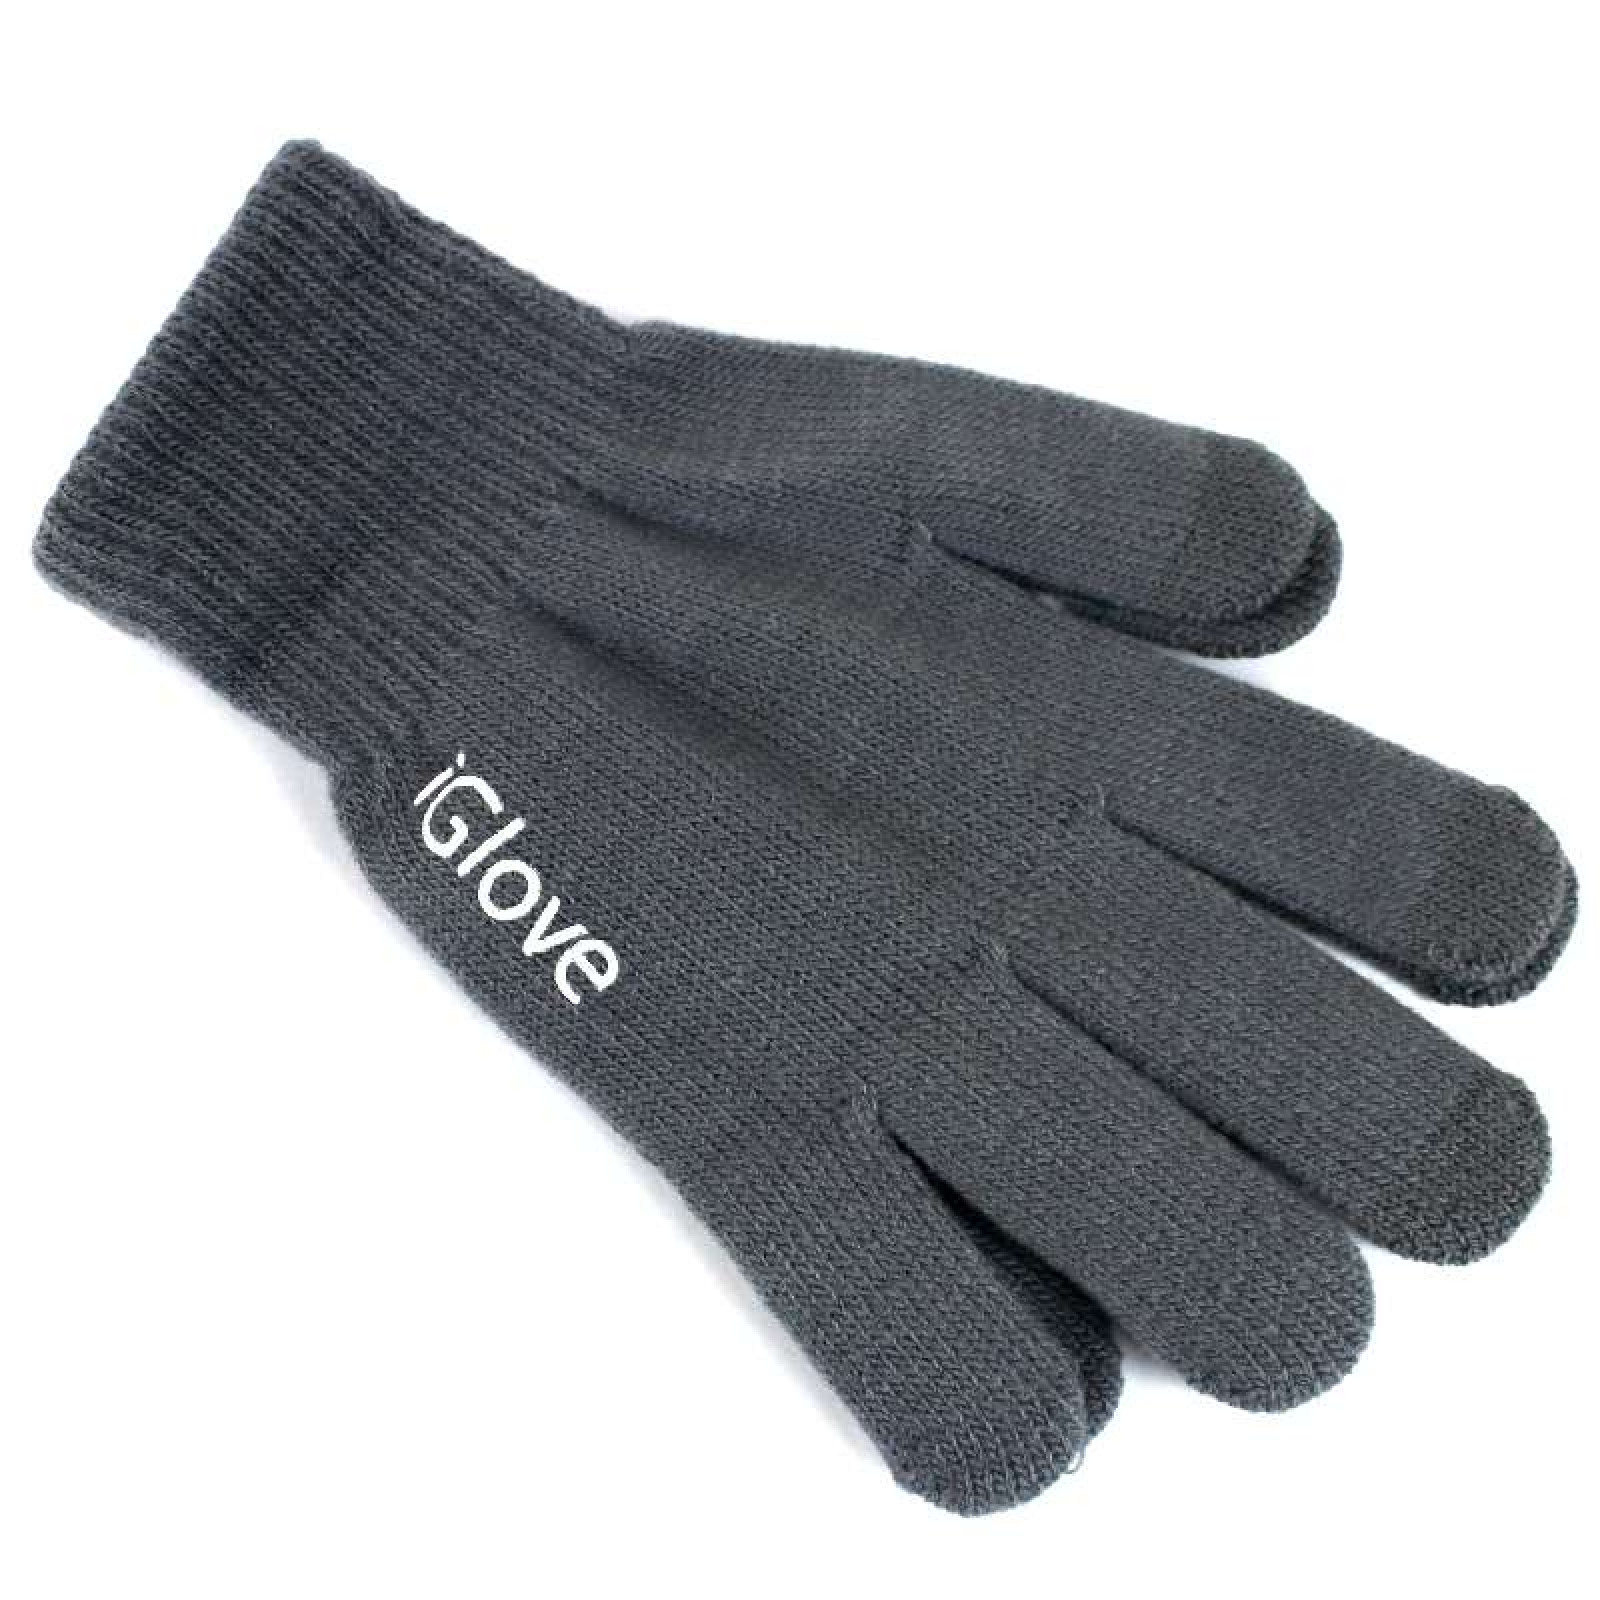 Перчатки iGlove для сенсорных экранов серые 138987